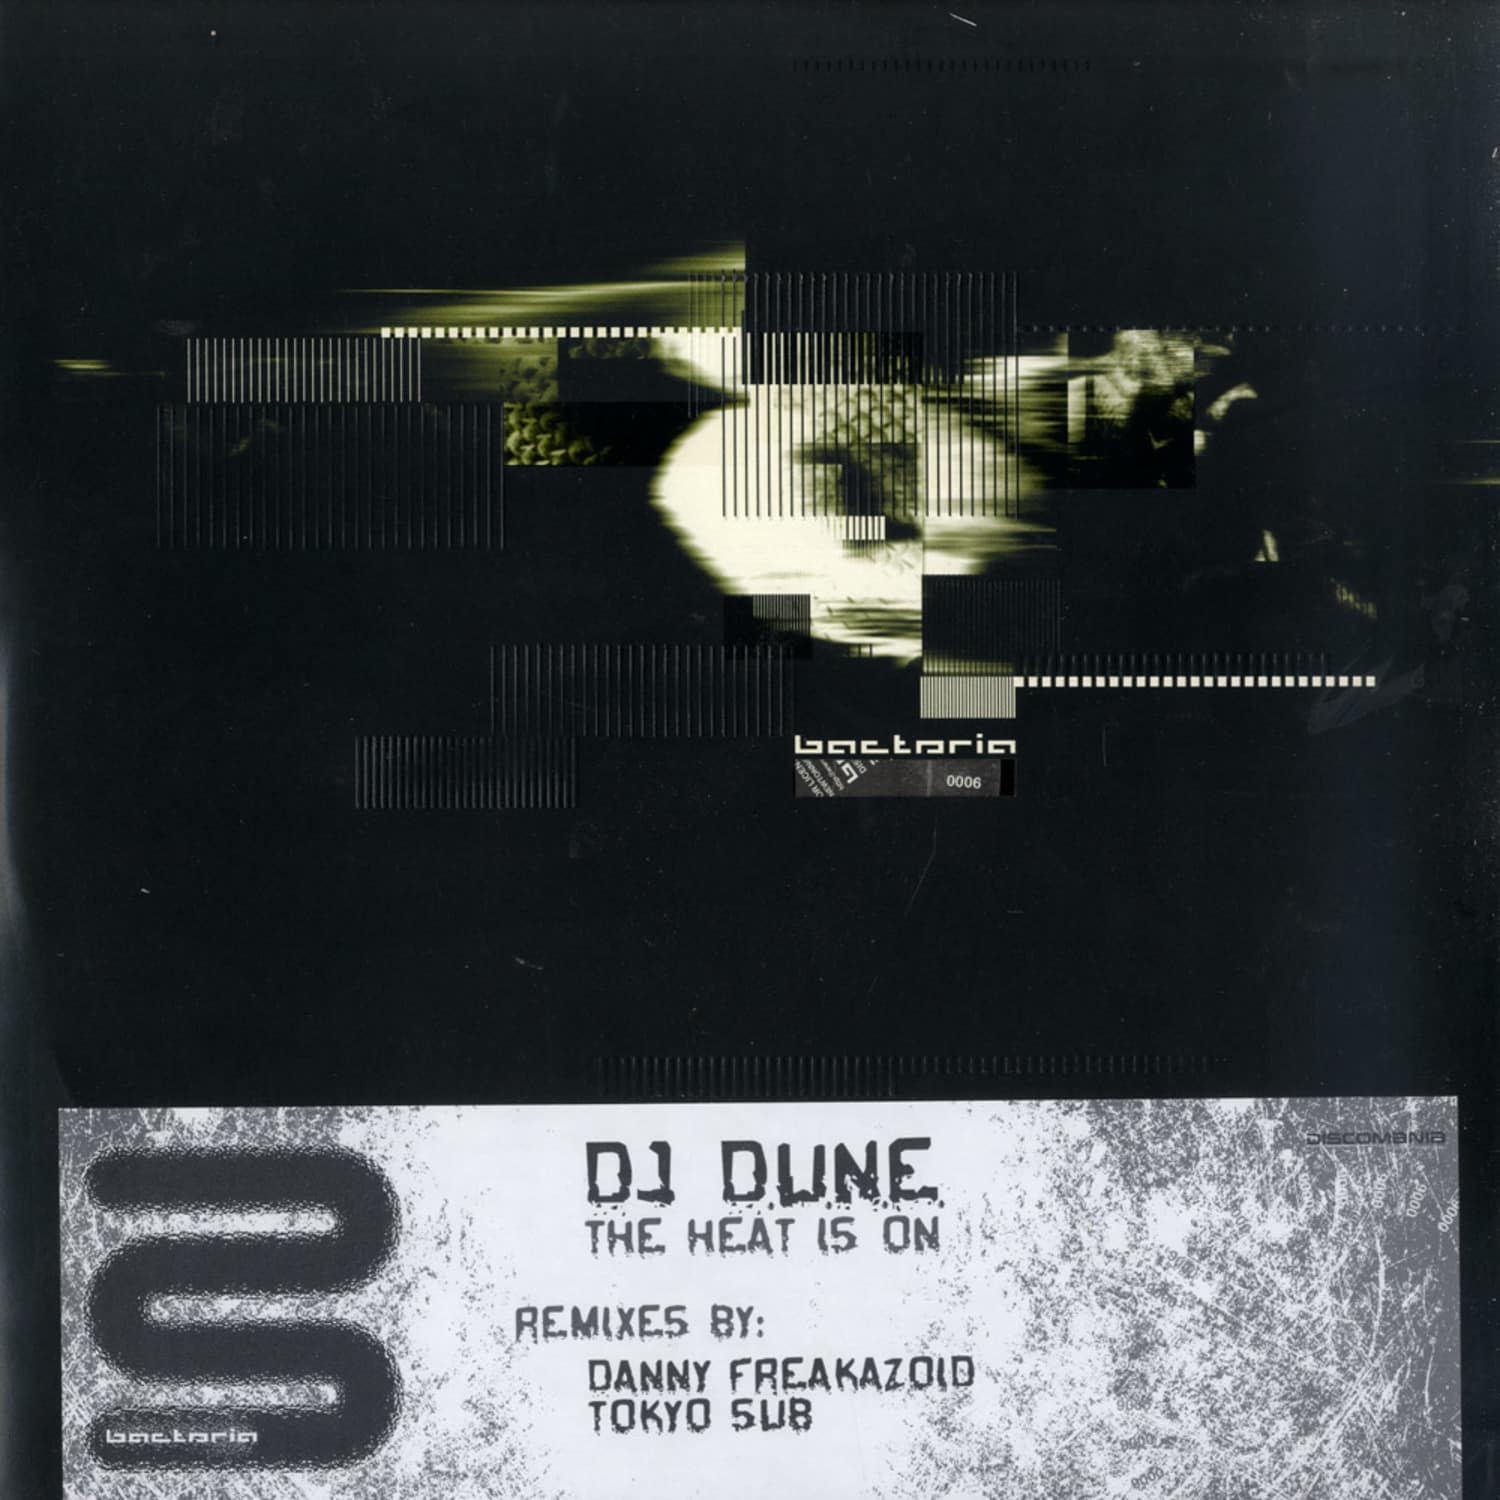 DJ D.U.N.E. - THE HEAT IS ON